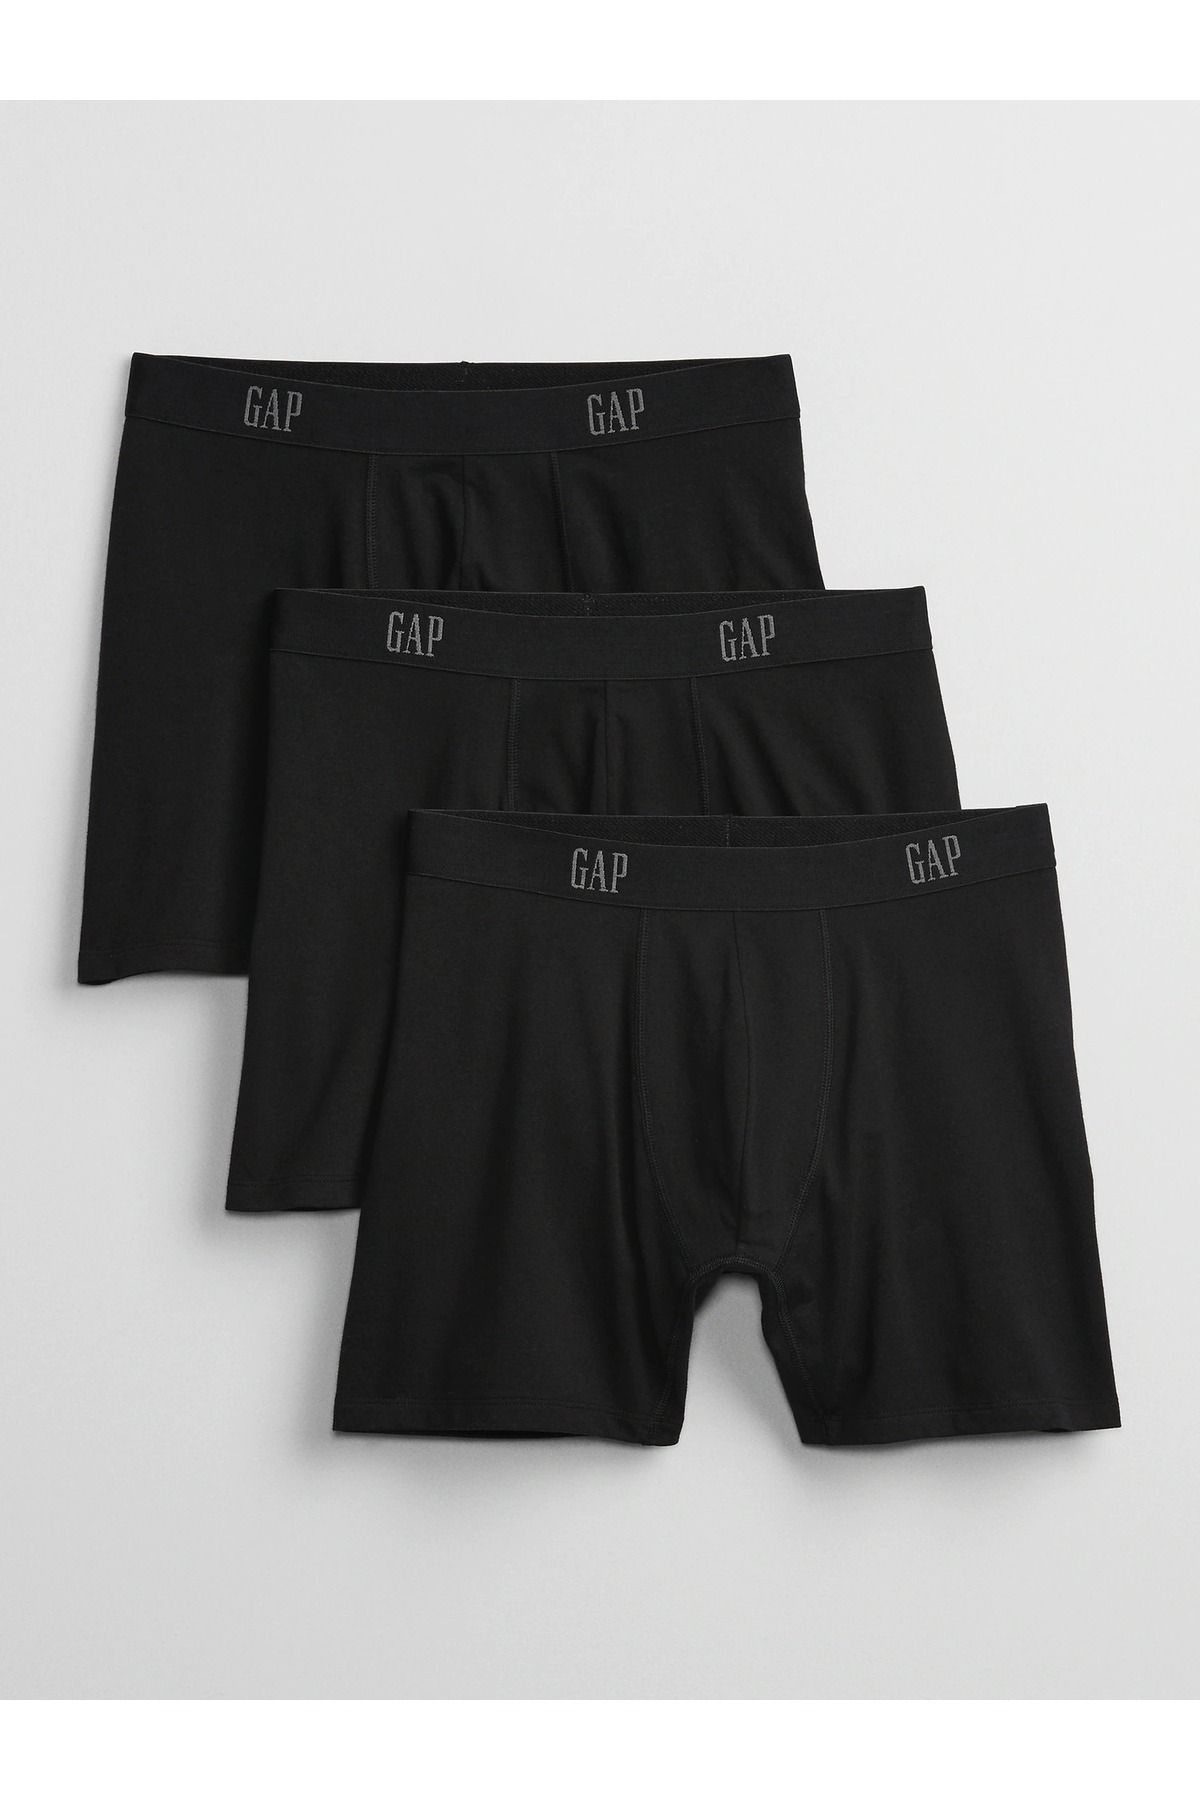 GAP Erkek Siyah Gap Logo 3'lü Boxer Seti